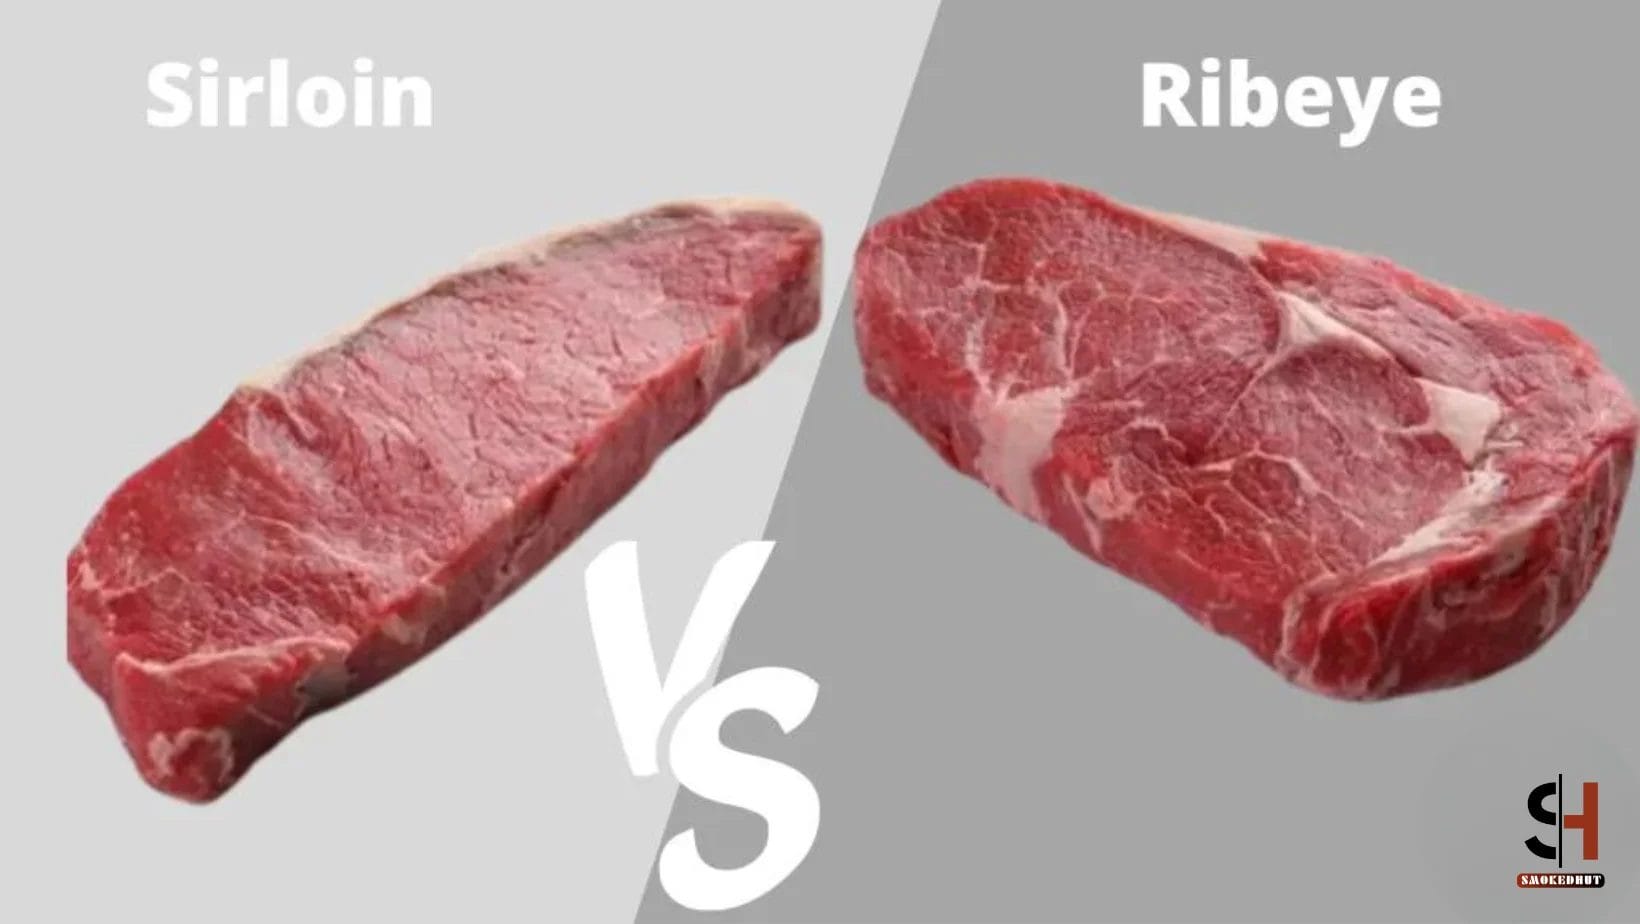 Sirloin vs Ribeye Steak